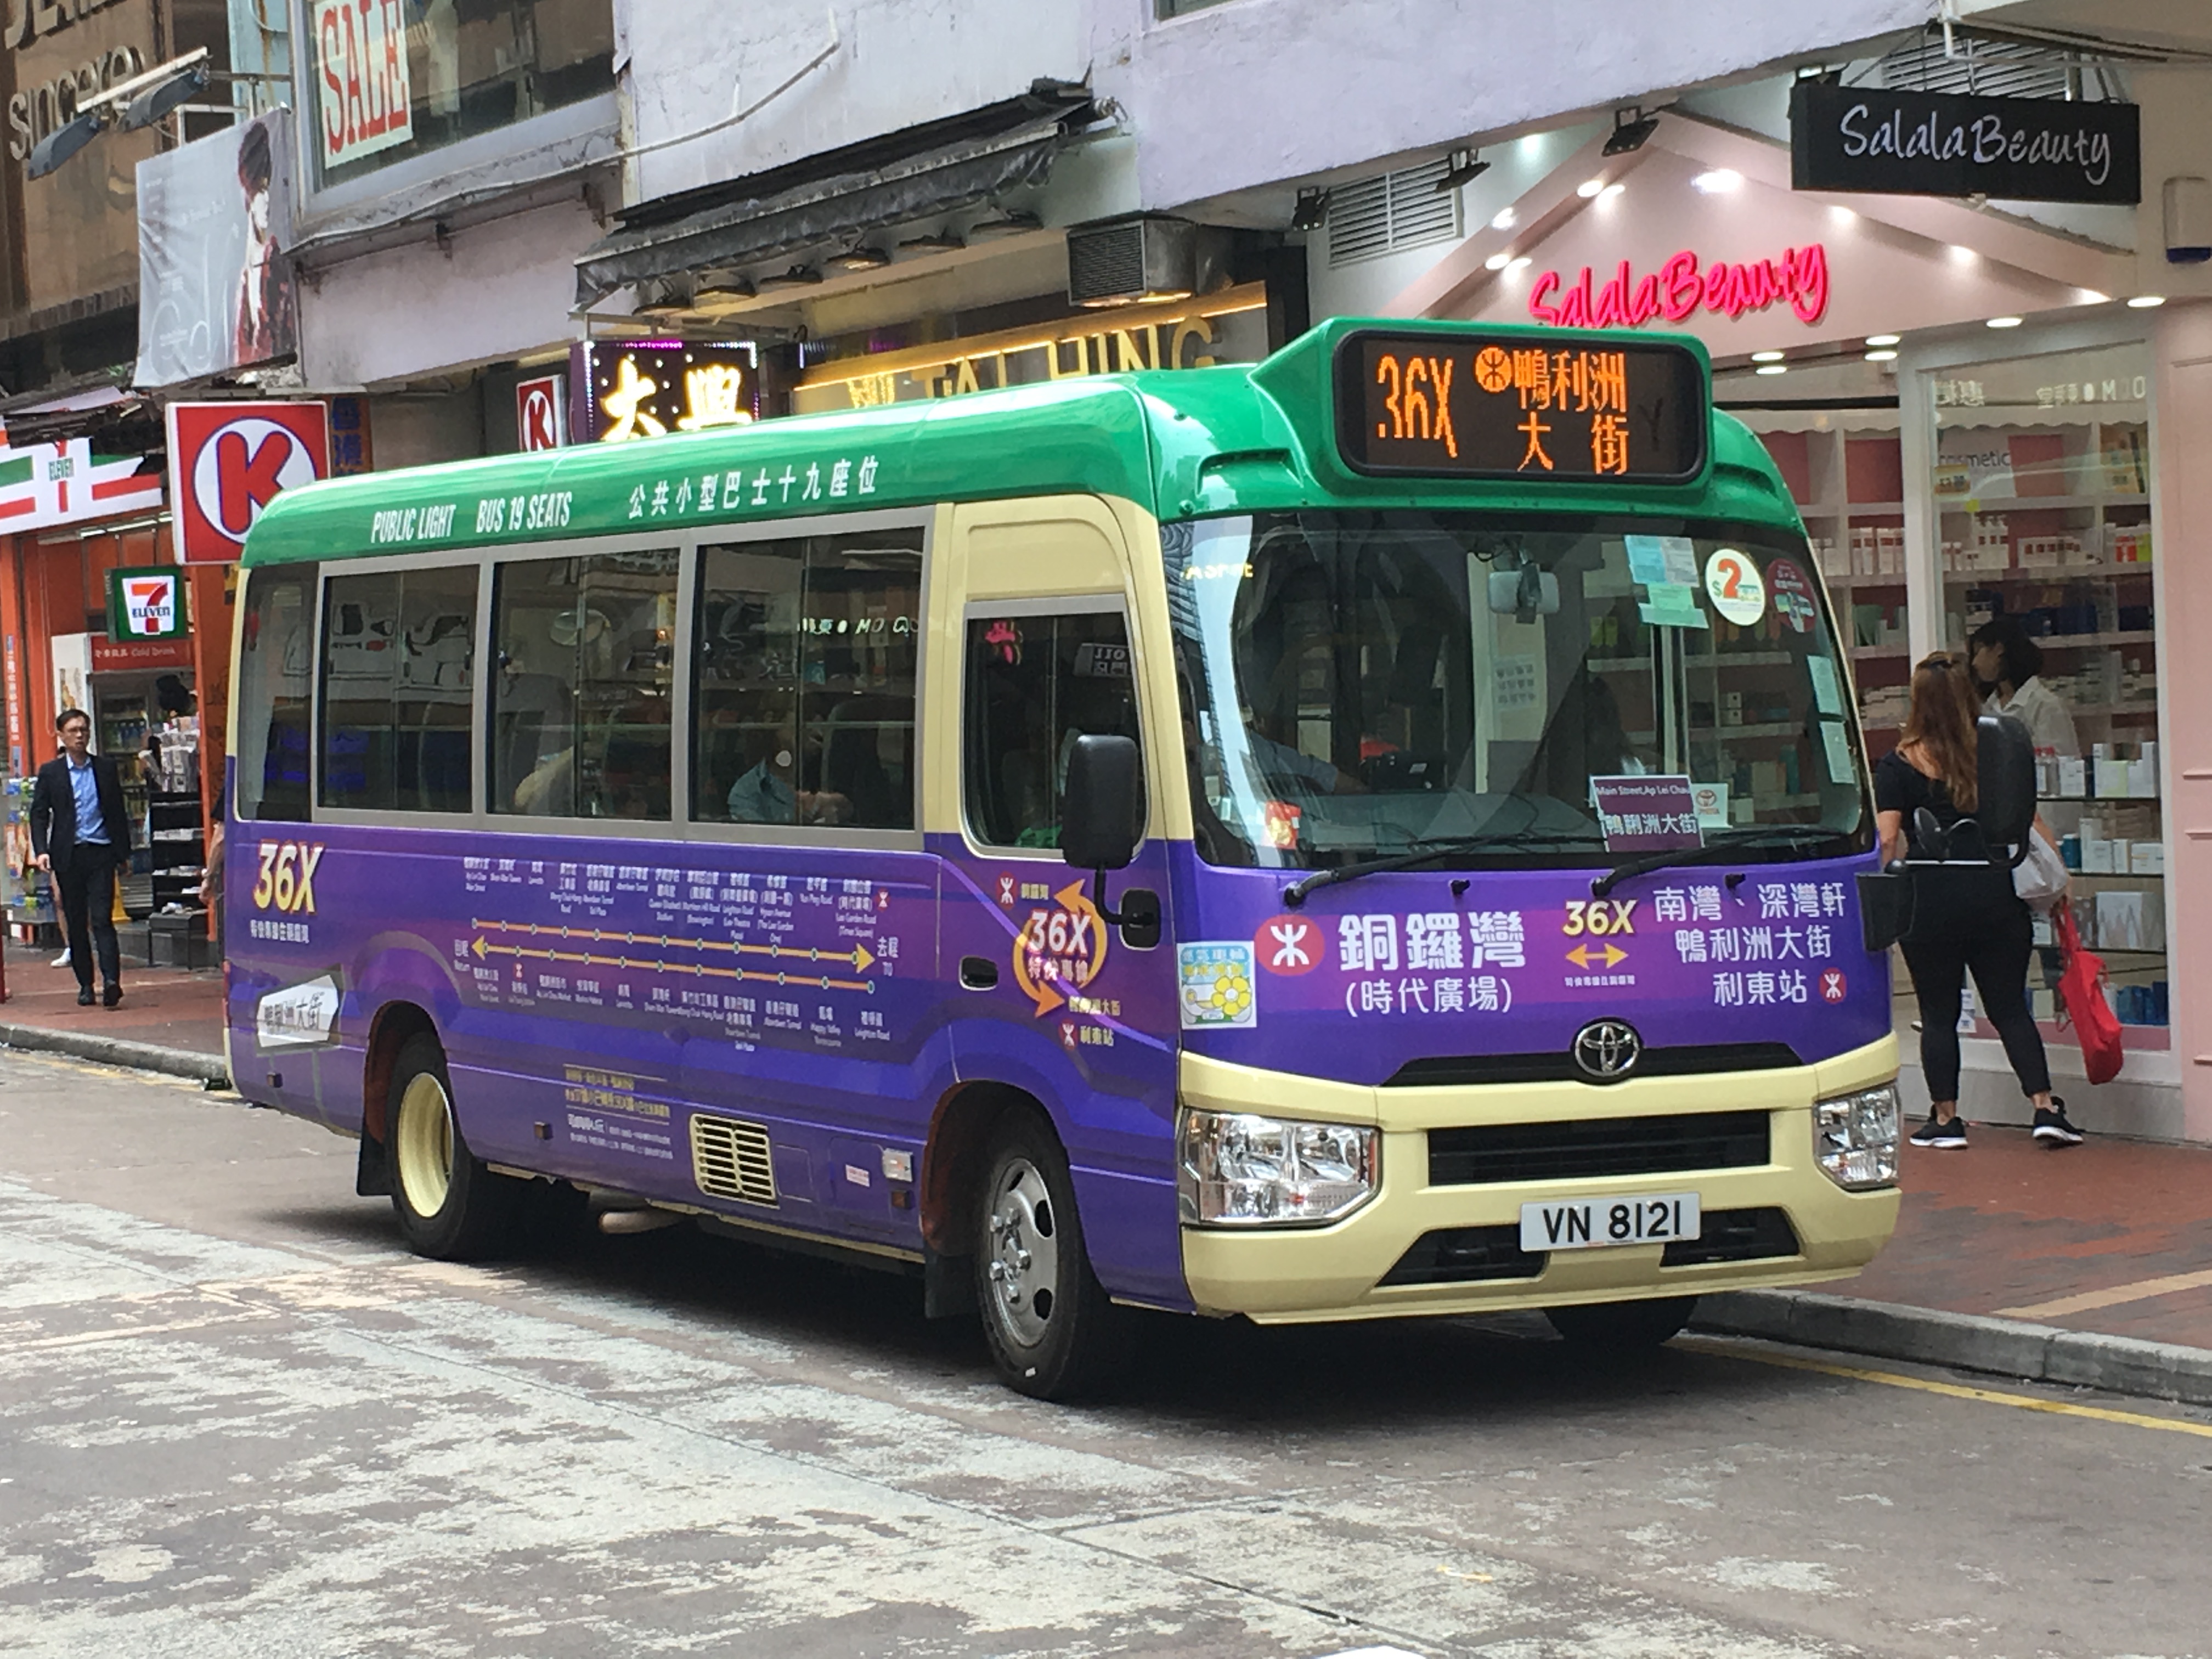 港岛专线小巴36x线 | 香港巴士大典 | fandom powered